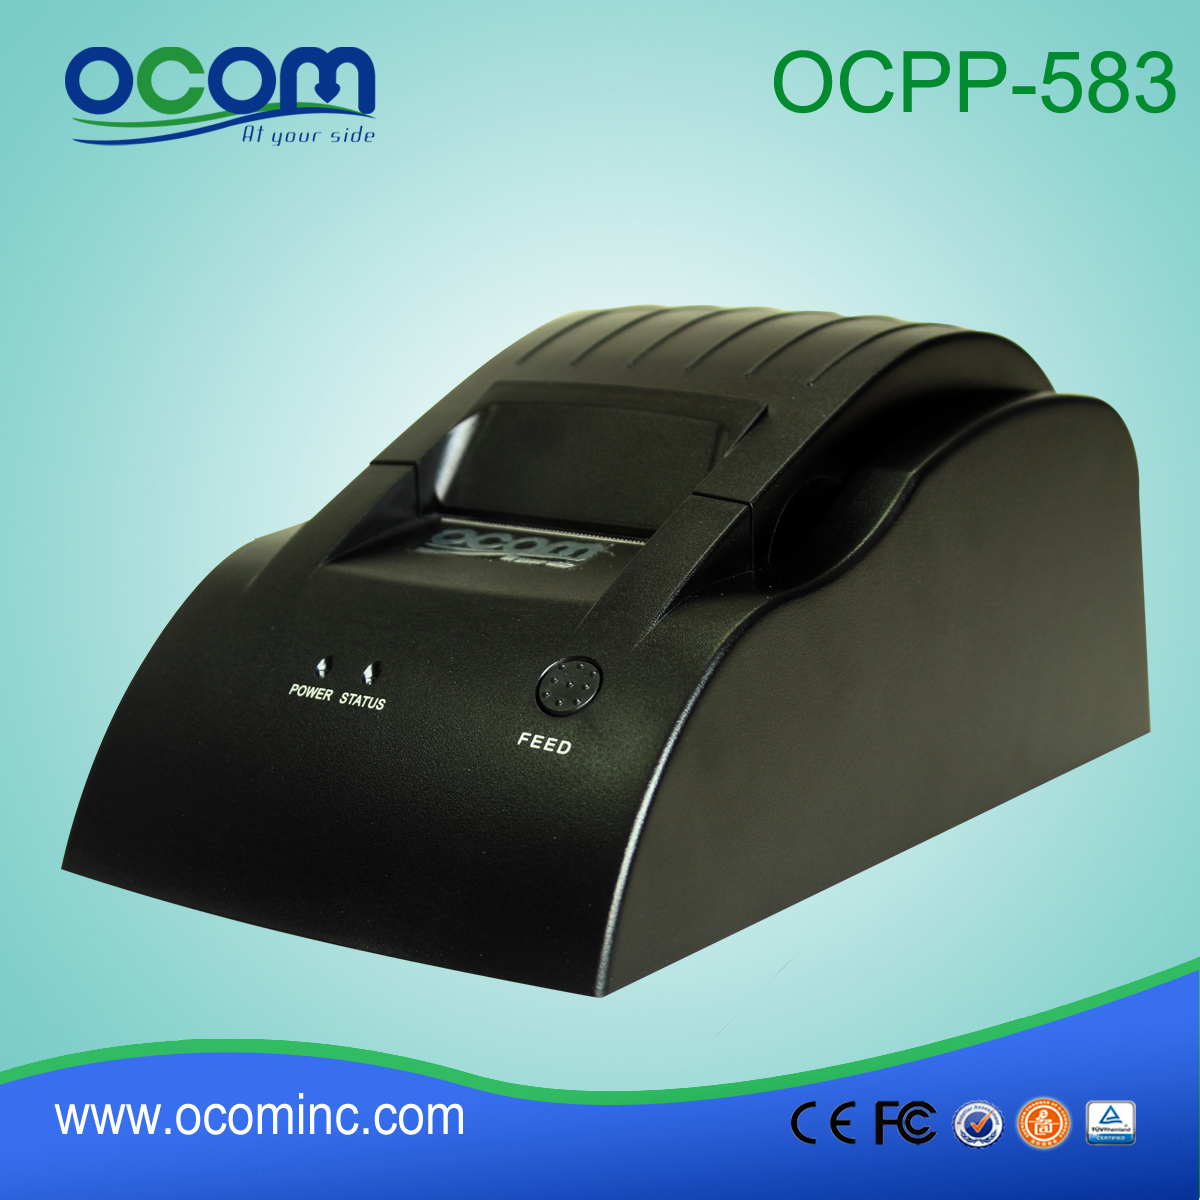 OCPP-583: 2015 прямые цены термопринтер, тепловая ККМ